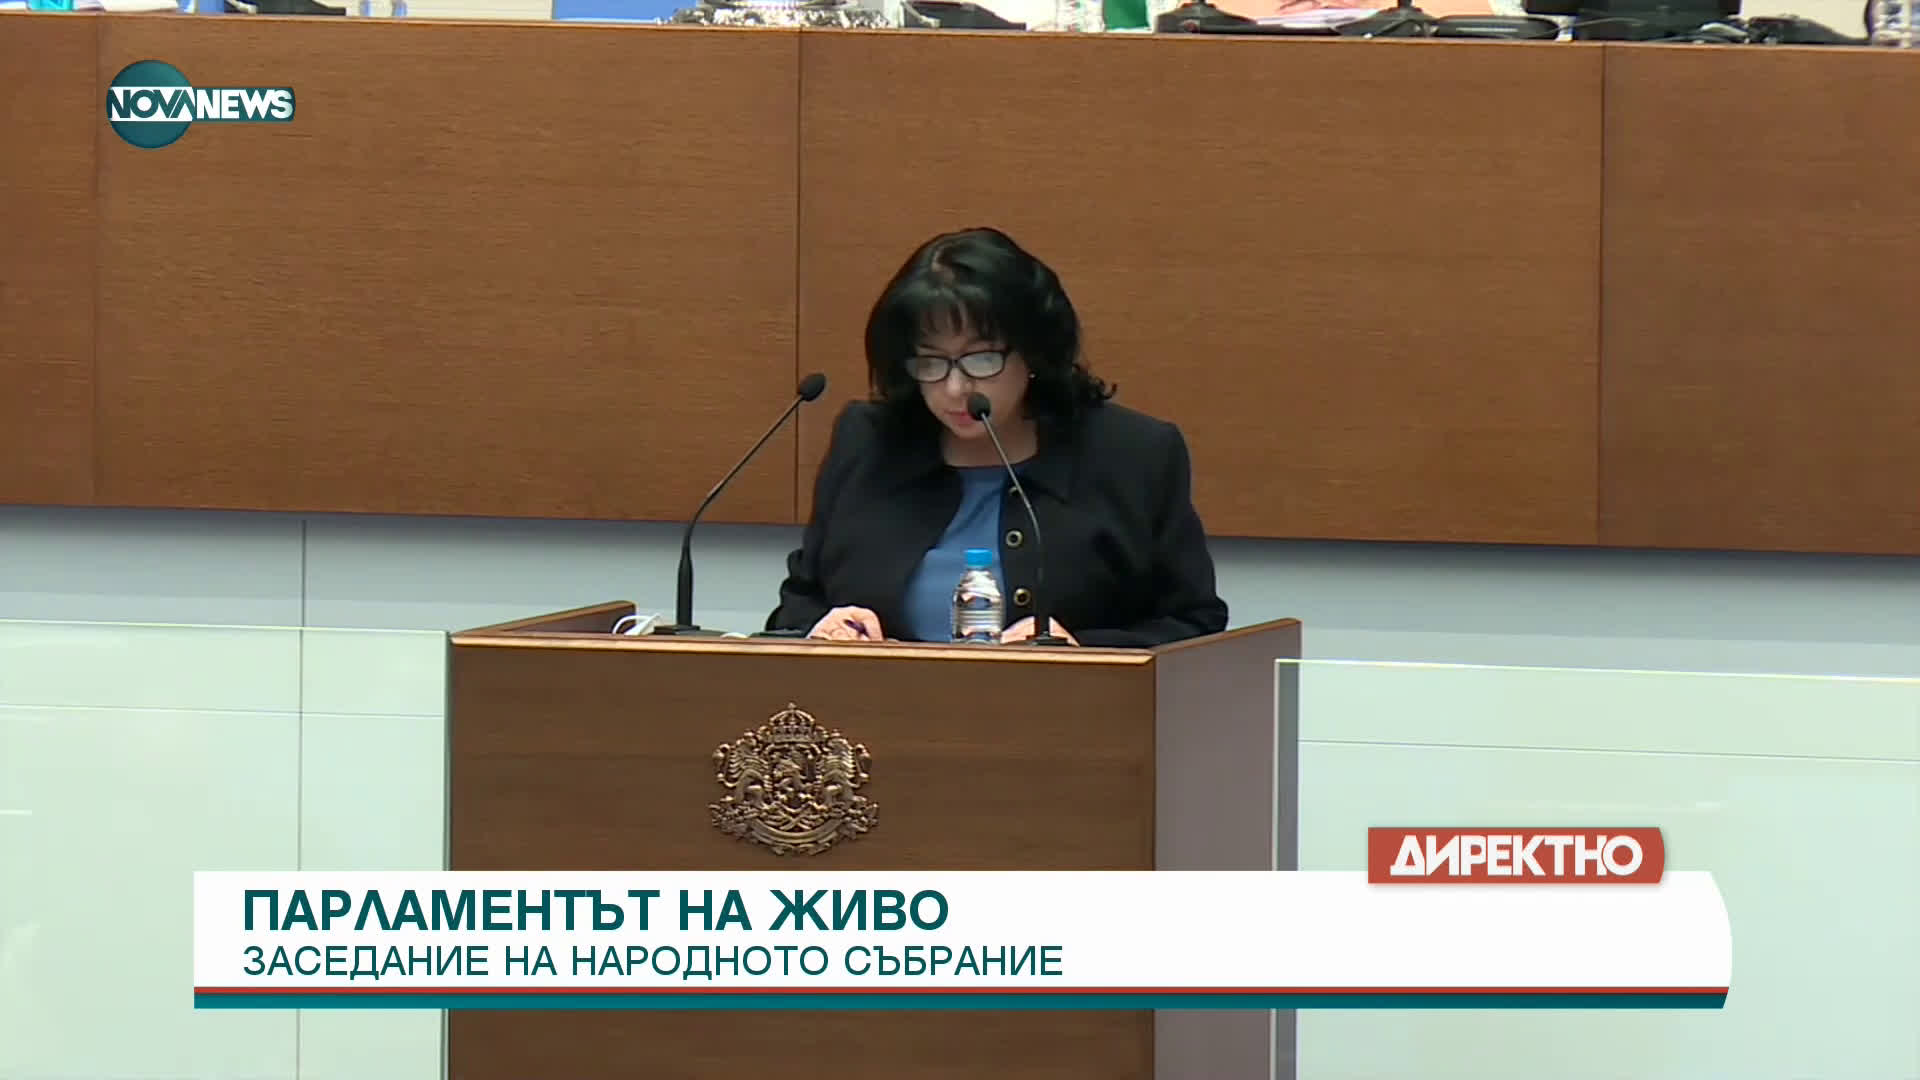 Изявление на министър Теменужка Петкова пред НС